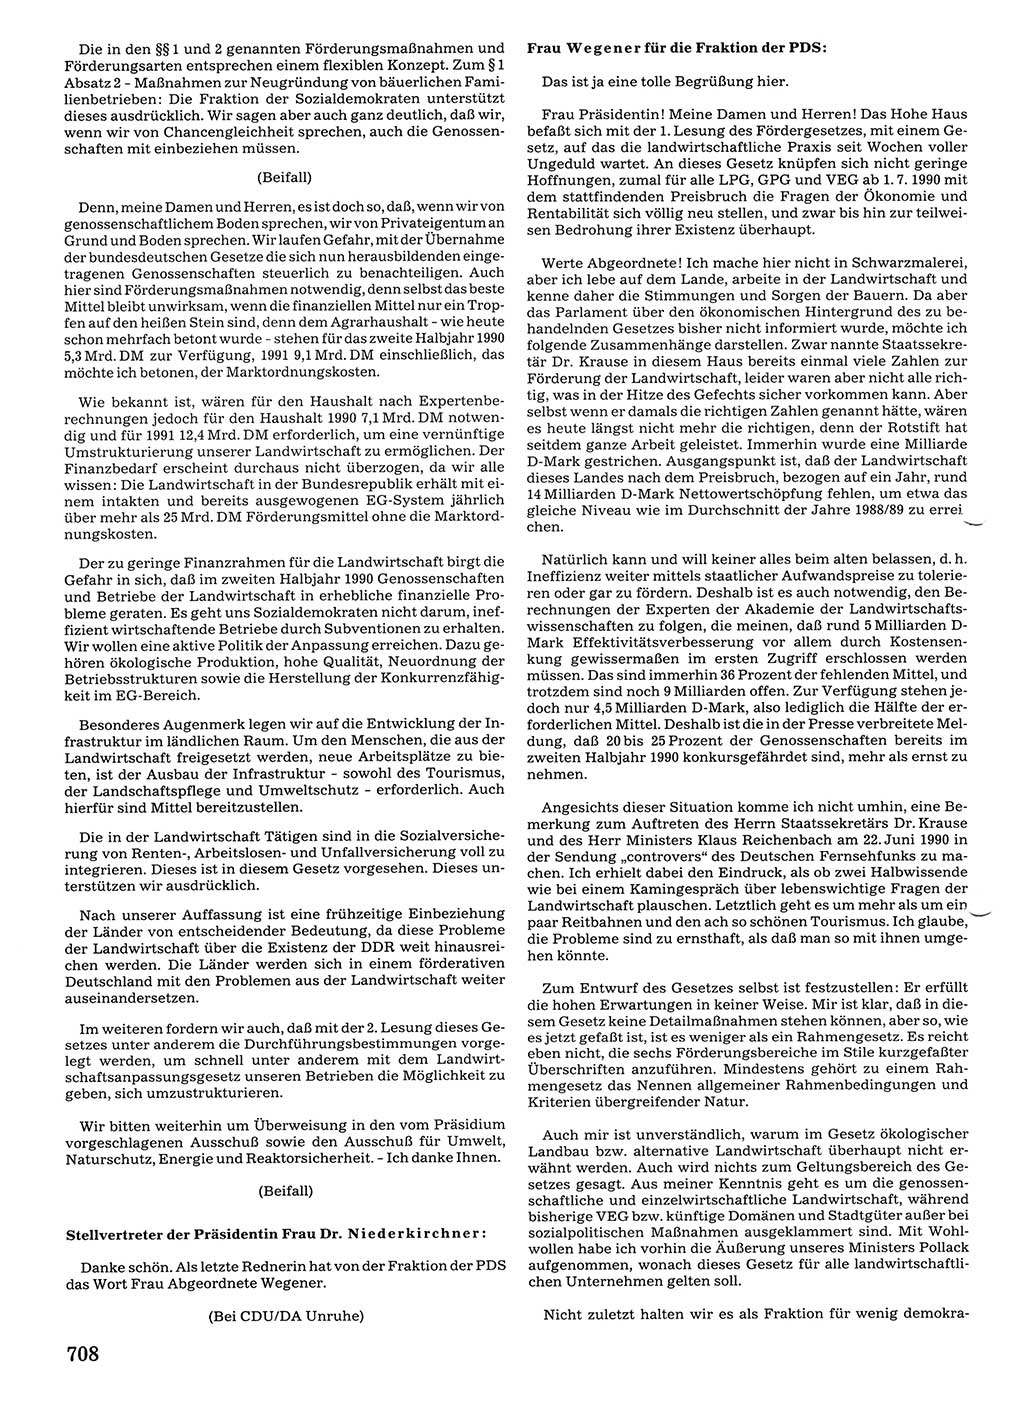 Tagungen der Volkskammer (VK) der Deutschen Demokratischen Republik (DDR), 10. Wahlperiode 1990, Seite 708 (VK. DDR 10. WP. 1990, Prot. Tg. 1-38, 5.4.-2.10.1990, S. 708)